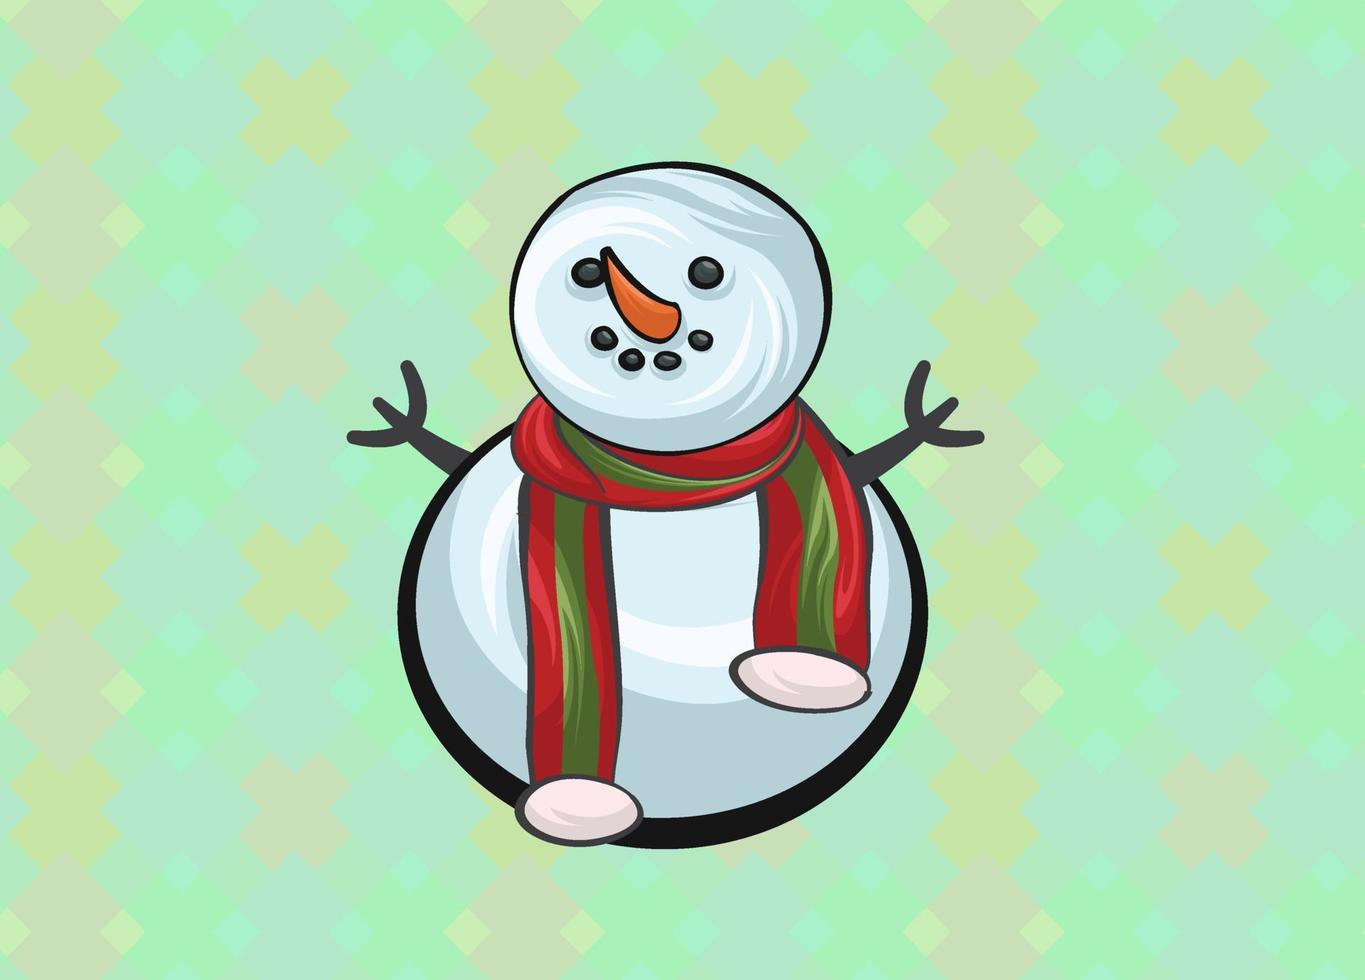 Navidad lindo muñeco de nieve alegre con gorra roja de Papá Noel. lindo personaje de dibujos animados de navidad. vector